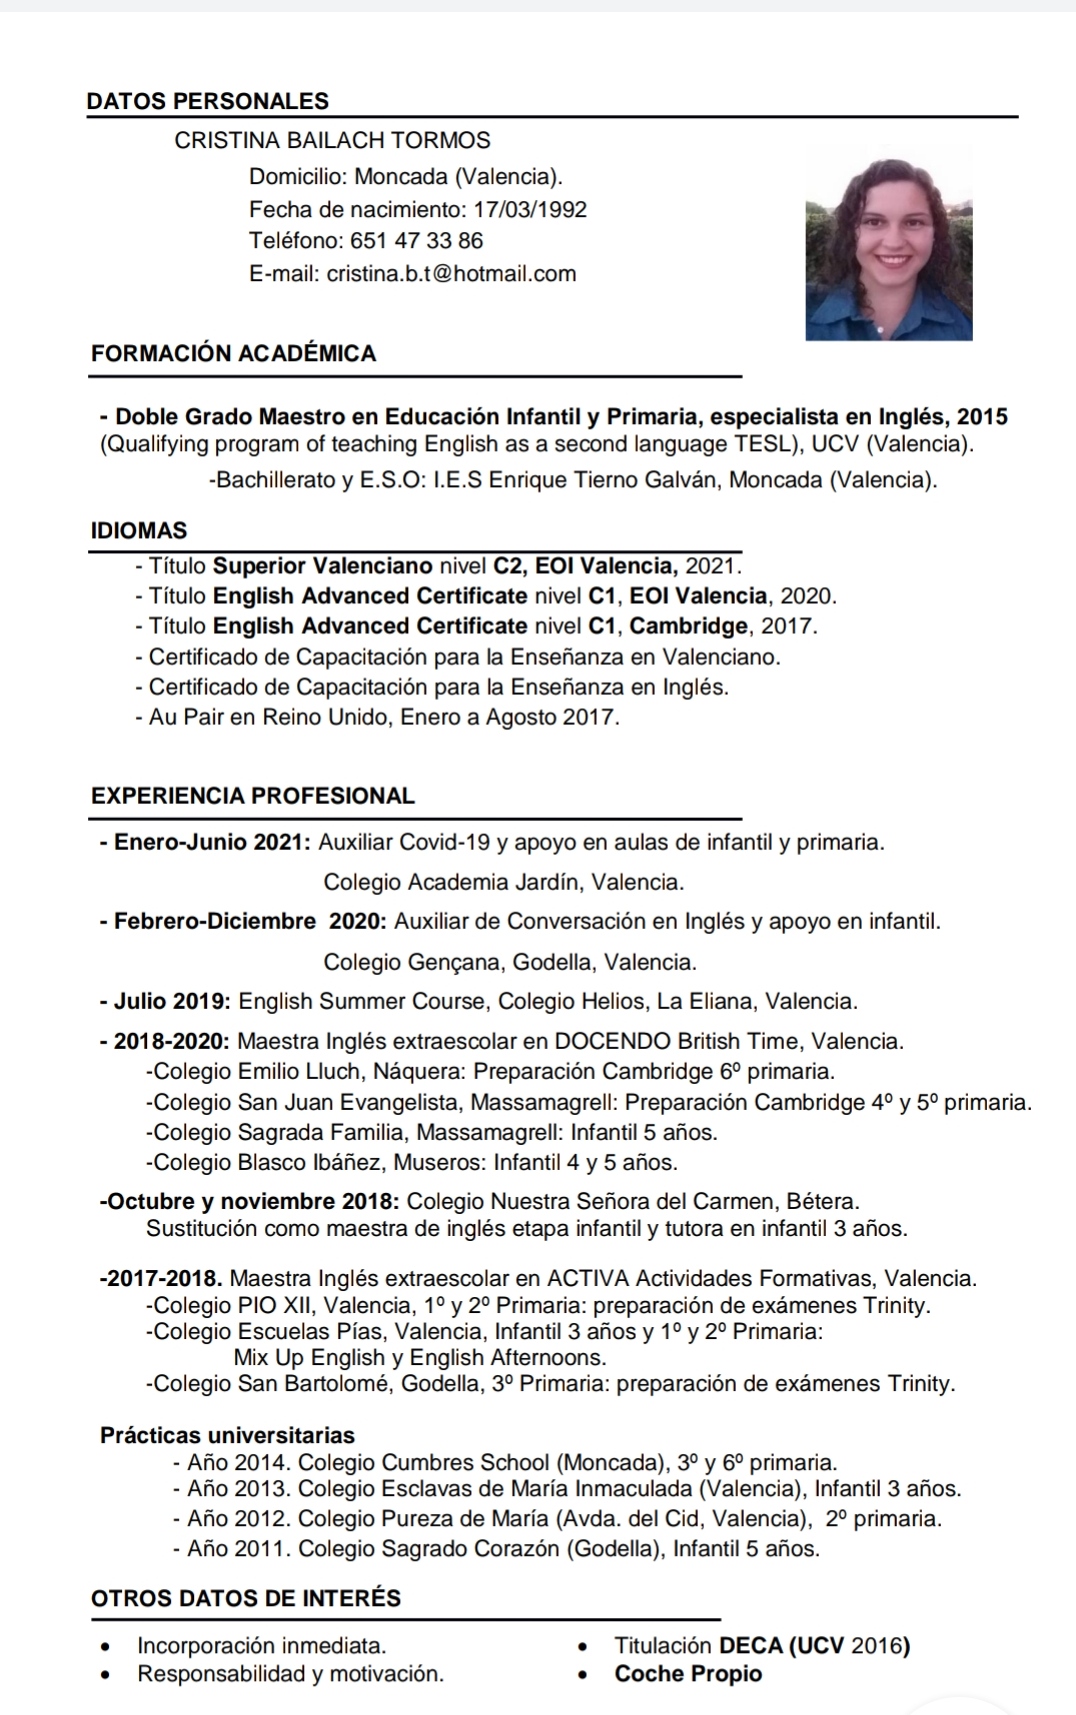 Currículum Cristina Bailach - DATOS PERSONALES
CRISTINA BAILACH TORMOS
Domicilio: Moncada (Valencia).
Fecha de nacimiento: 17/03/1992
Teléfono: 651 47 33 86
E-mail: cristina.b.t@hotmail.com

FORMACION ACADEMICA

- Doble Grado Maestro en Educacion Infantil y Primaria, especialista en Inglés, 2015
(Qualifying program of teaching English as a second language TESL), UCV (Valencia).

-Bachillerato y E.S.O: L.E.S Enrique Tierno Galvan, Moncada (Valencia).

IDIOMAS
- Titulo Superior Valenciano nivel C2, EOI Valencia, 2021.
- Titulo English Advanced Certificate nivel C1, EOI Valencia, 2020.
- Titulo English Advanced Certificate nivel C1, Cambridge, 2017.
- Certificado de Capacitacion para la Ensefianza en Valenciano.
- Certificado de Capacitacion para la Ensefianza en Inglés.
- Au Pair en Reino Unido, Enero a Agosto 2017.

EXPERIENCIA PROFESIONAL

- Enero-Junio 2021: Auxiliar Covid-19 y apoyo en aulas de infantil y primaria.
Colegio Academia Jardin, Valencia.

- Febrero-Diciembre 2020: Auxiliar de Conversacion en Inglés y apoyo en infantil.
Colegio Gengana, Godella, Valencia.

- Julio 2019: English Summer Course, Colegio Helios, La Eliana, Valencia.

- 2018-2020: Maestra Inglés extraescolar en DOCENDO British Time, Valencia.
-Colegio Emilio Lluch, Naquera: Preparacion Cambridge 6° primaria.
-Colegio San Juan Evangelista, Massamagrell: Preparacion Cambridge 4° y 5° primaria.
-Colegio Sagrada Familia, Massamagrell: Infantil 5 anos.
-Colegio Blasco Ibanez, Museros: Infantil 4 y 5 anos.

-Octubre y noviembre 2018: Colegio Nuestra Sefiora del Carmen, Bétera.
Sustitucion como maestra de inglés etapa infantil y tutora en infantil 3 anos.

-2017-2018. Maestra Inglés extraescolar en ACTIVA Actividades Formativas, Valencia.
-Colegio PIO XII, Valencia, 1° y 2° Primaria: preparacion de examenes Trinity.
-Colegio Escuelas Pias, Valencia, Infantil 3 afios y 1°y 2° Primaria:

Mix Up English y English Afternoons.
-Colegio San Bartolomé, Godella, 3° Primaria: preparacion de examenes Trinity.

Practicas universitarias
- Ao 2014. Colegio Cumbres School (Moncada), 3° y 6° primaria
- Ao 2013. Colegio Esclavas de Maria Inmaculada (Valencia), Infantil 3 anos.
- Ao 2012. Colegio Pureza de Maria (Avda. del Cid, Valencia), 2° primara.
- Afio 2011. Colegio Sagrado Corazon (Godella), Infantil 5 afios.

OTROS DATOS DE INTERES

* Incorporacién inmediata * Titulacion DECA (UCV 2016)
* Responsabilidad y motivacion. « Coche Propio